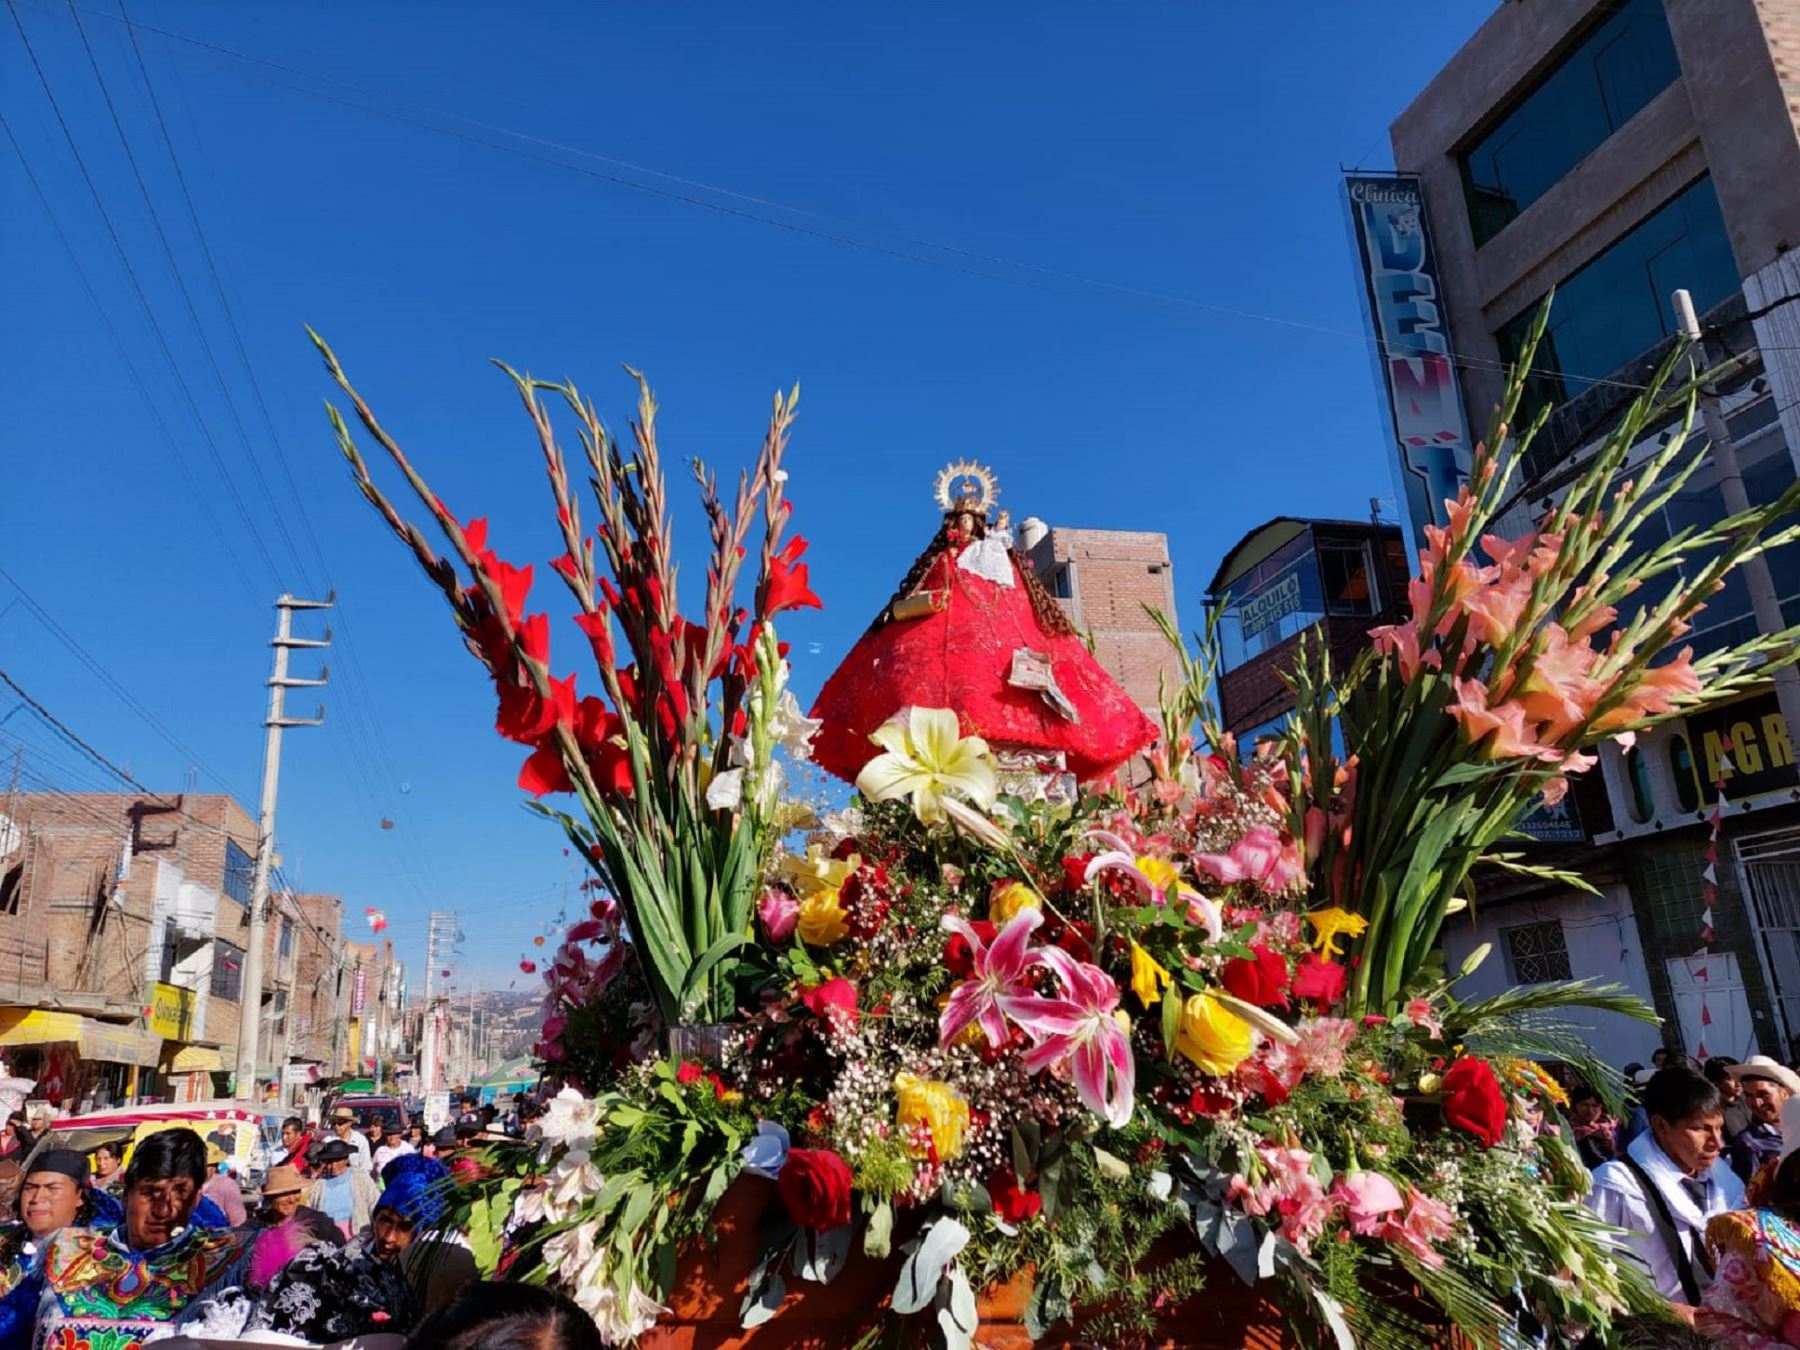 El distrito de Sapallanga, ubicado en la provincia de Huancayo, inicia los actos religiosos por la festividad de la Virgen de Cocharcas, una de las mayores fiestas tradicionales del Valle del Mantaro. Foto: Pedro Tinoco